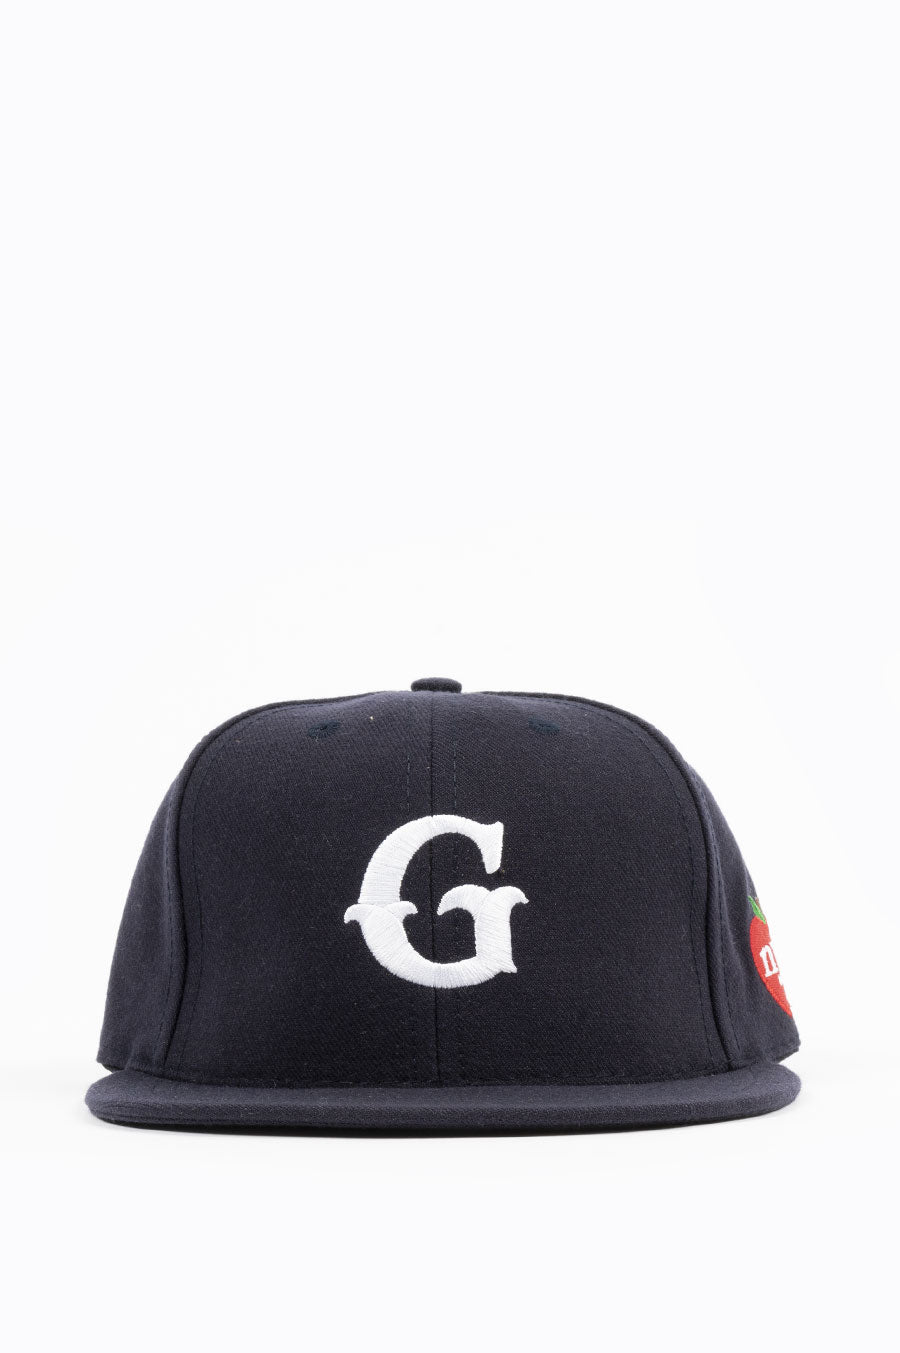 GARDENS & SEEDS BLENDS NAVY NYC – G CAP